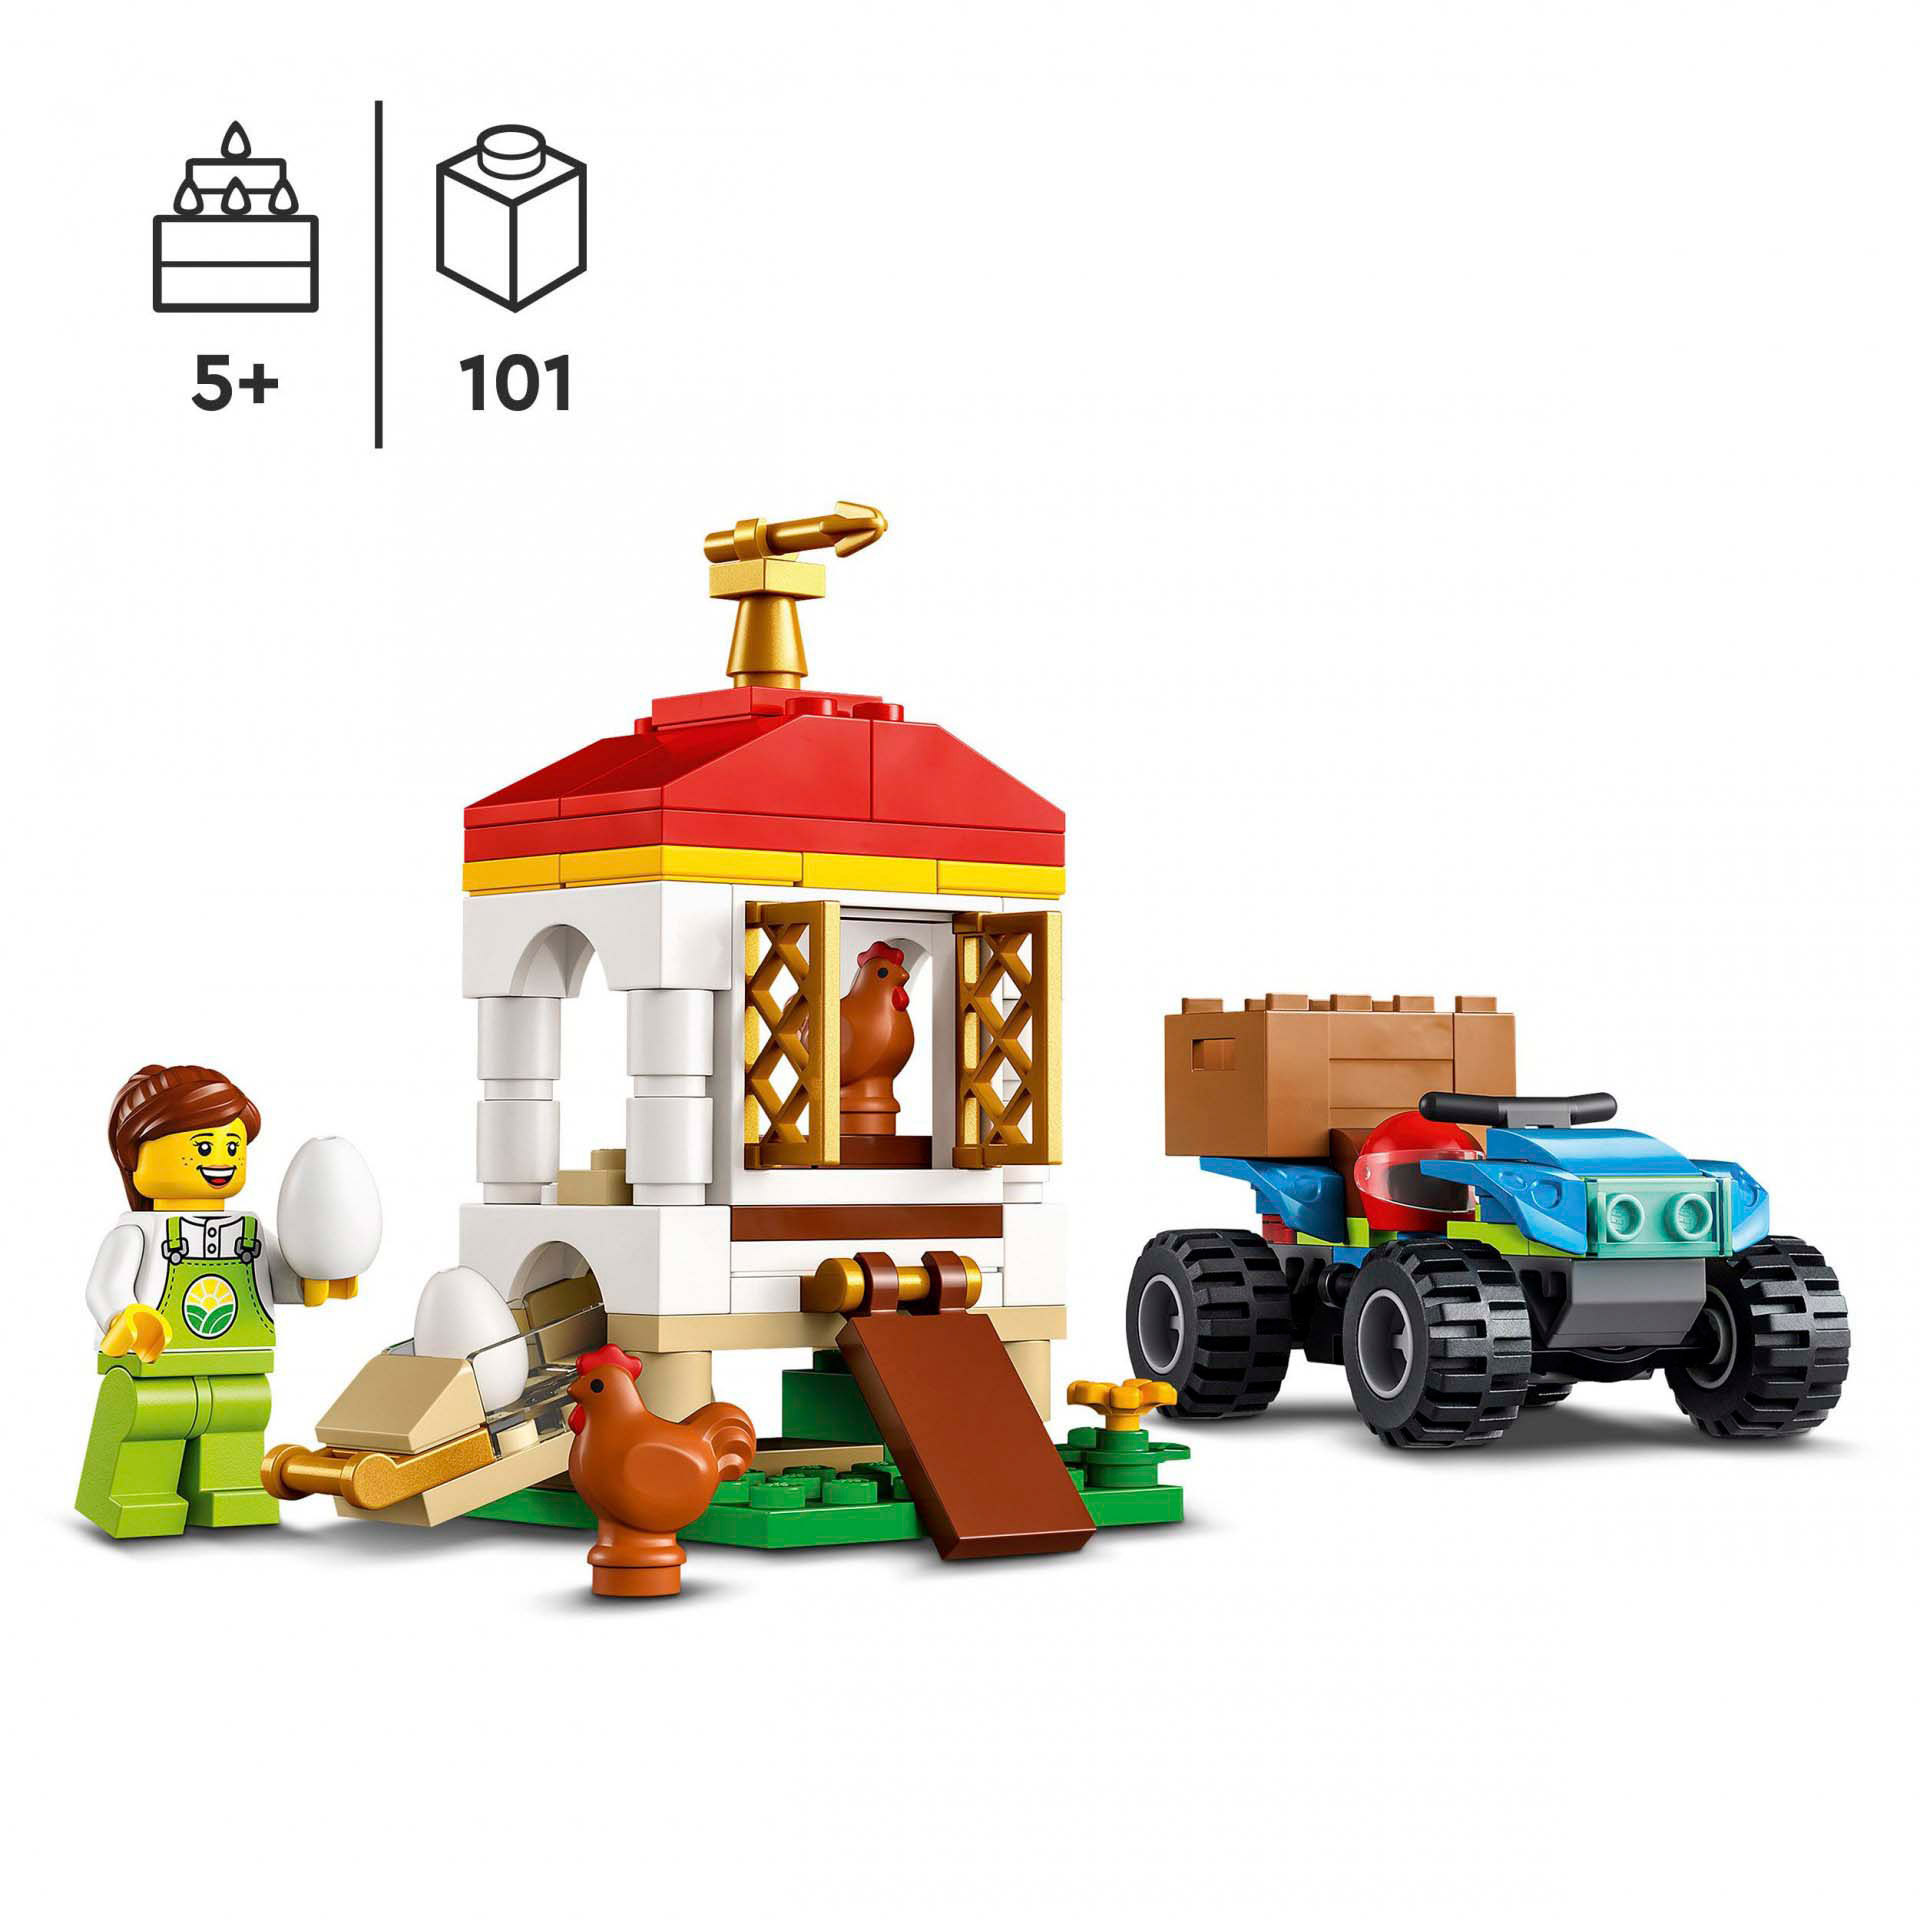 LEGO City Il Pollaio, Set con Animali, Nido per Galline e Uova Fresche, Fuoristr 60344, , large